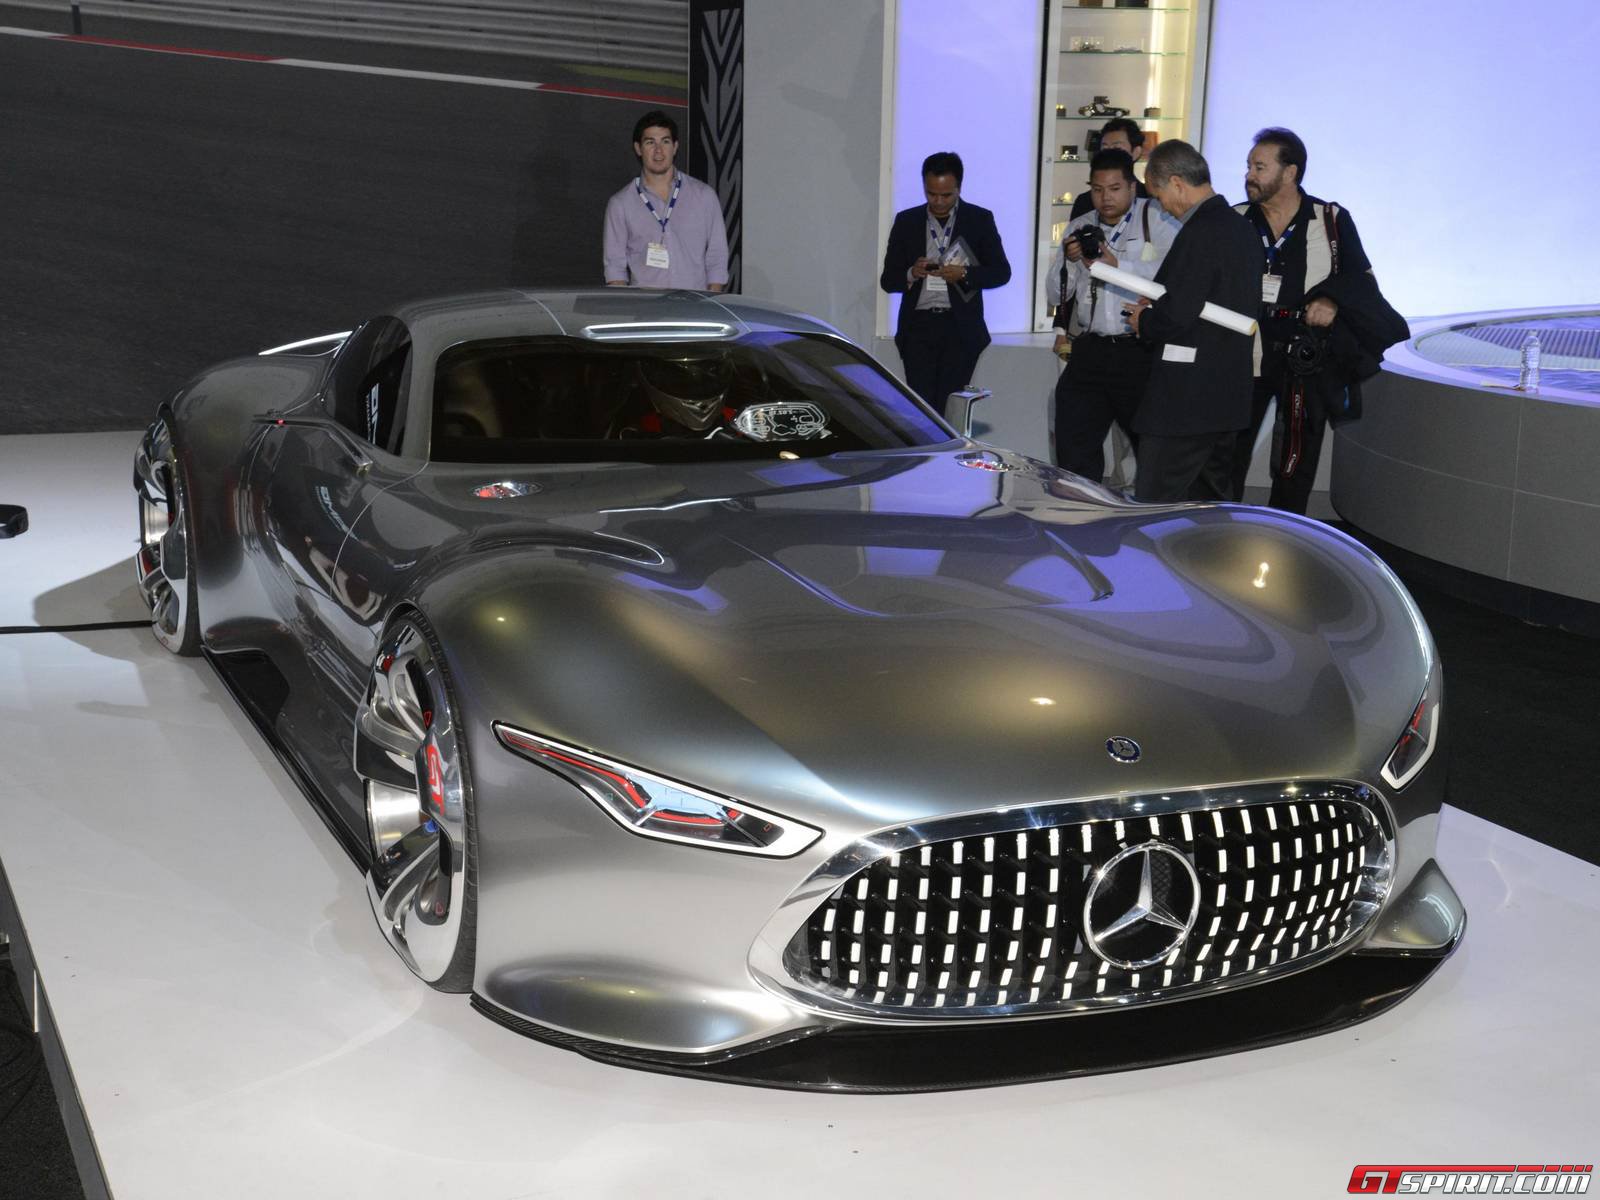 2013 Mercedes Benz Vision Gran Turismo Concept